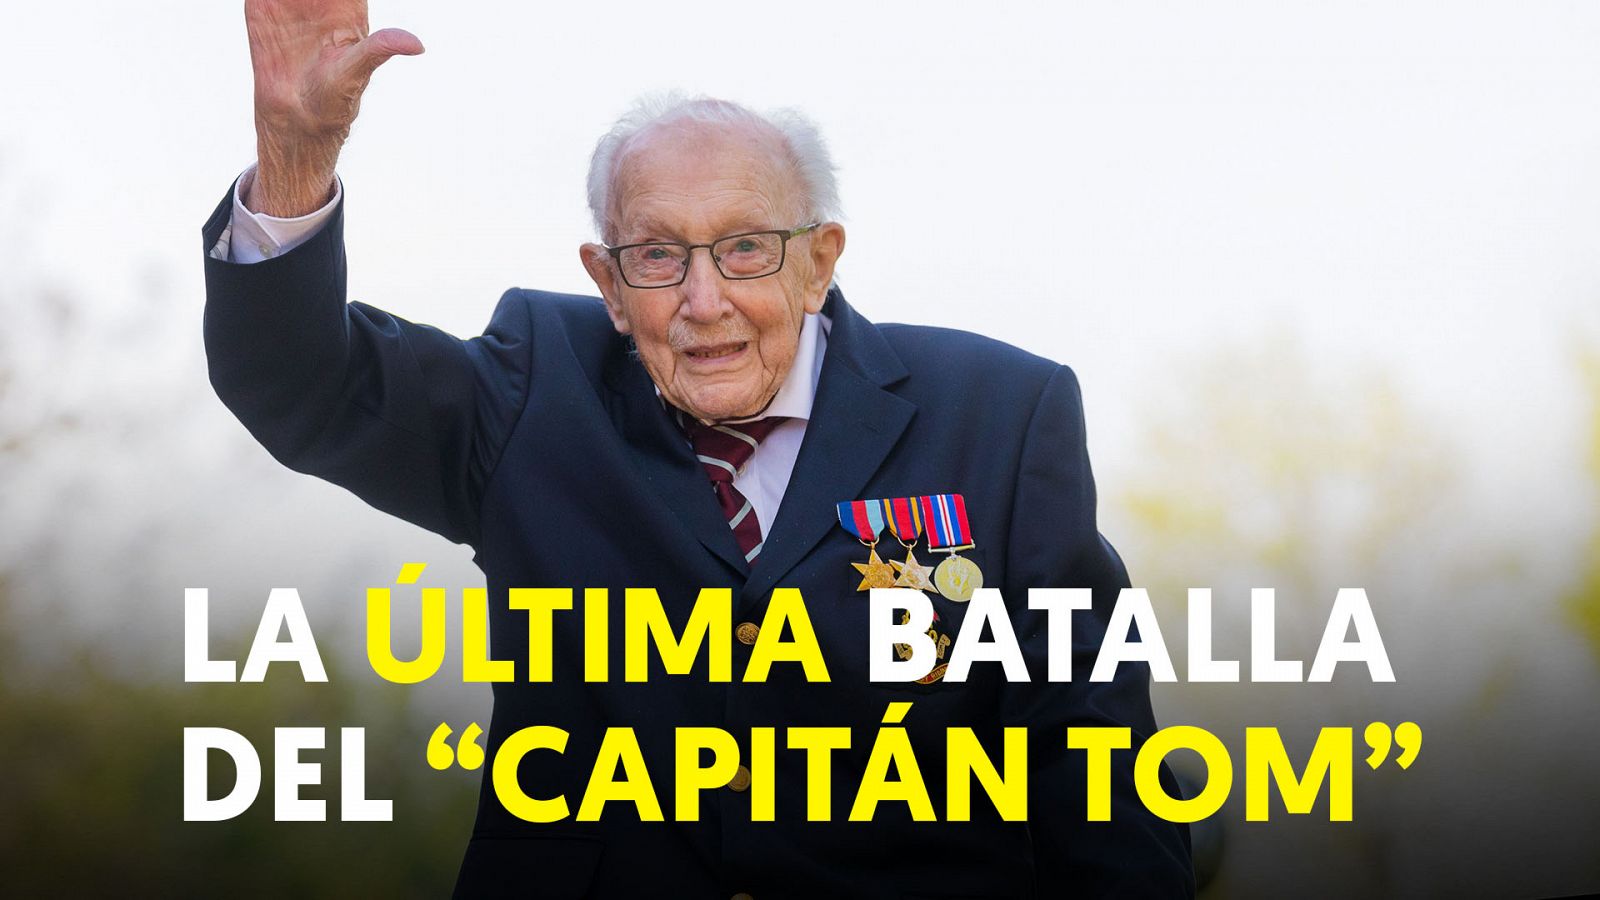 Fallece el capitán Tom, símbolo de la lucha contra la pandemia en el Reino Unido